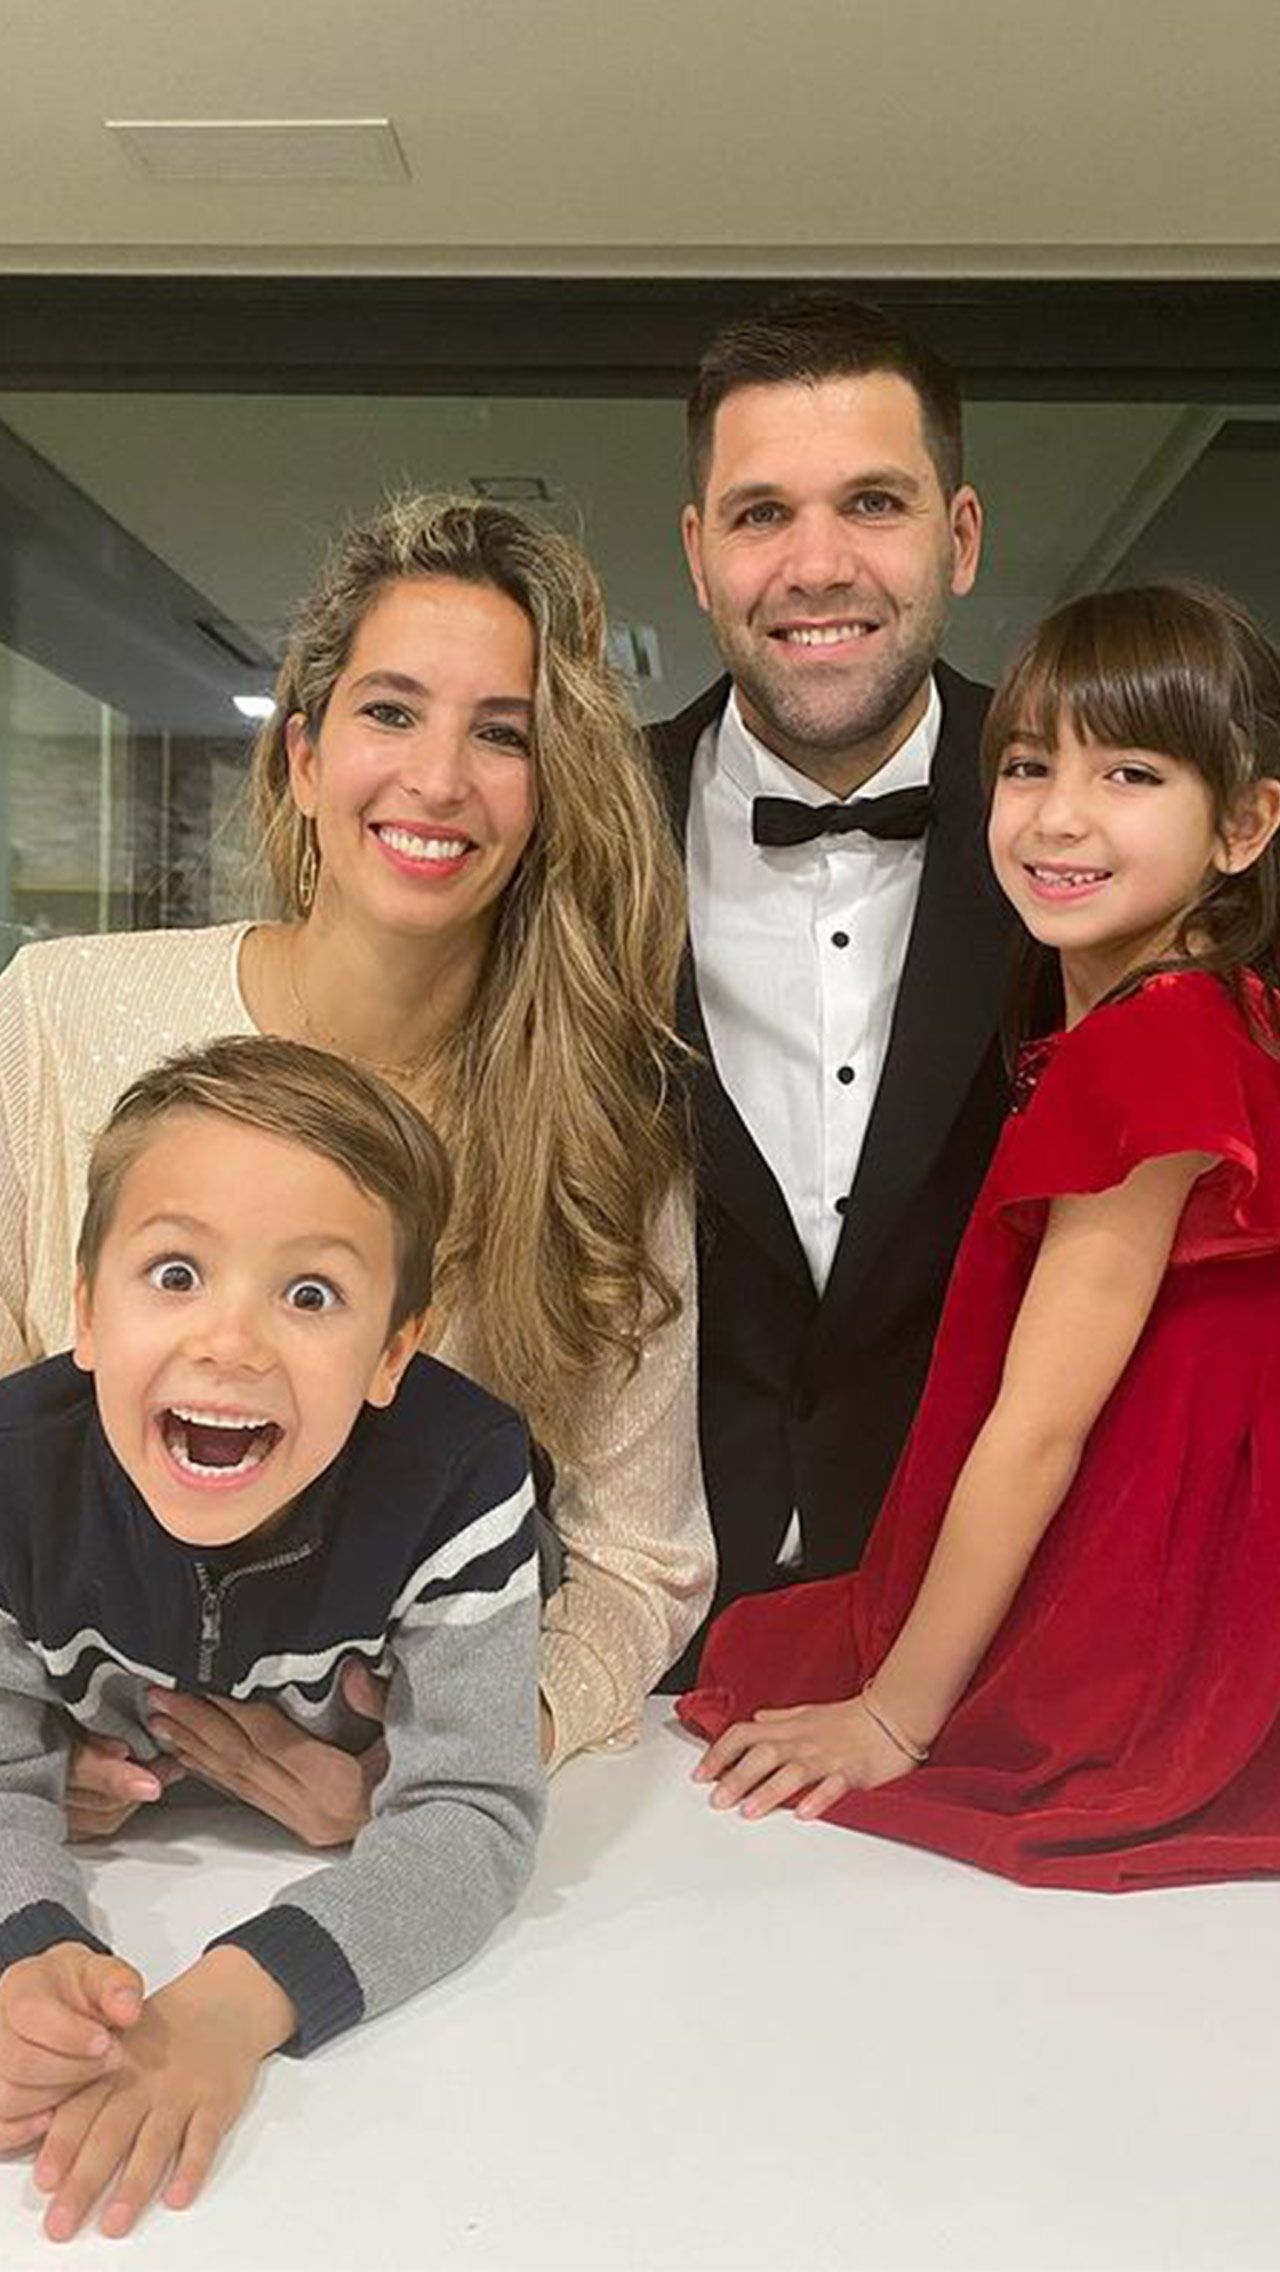 Помимо карьерного успеха, Рейес счастлив в личной жизни. Фелипе с 2009 года женат на бывшей кубинской баскетболистке Кирении Кабрере, которая младше него на четыре года. Пара растит двух детей — 7-летнюю дочь Хлою и 5-летнего сына Акселя.